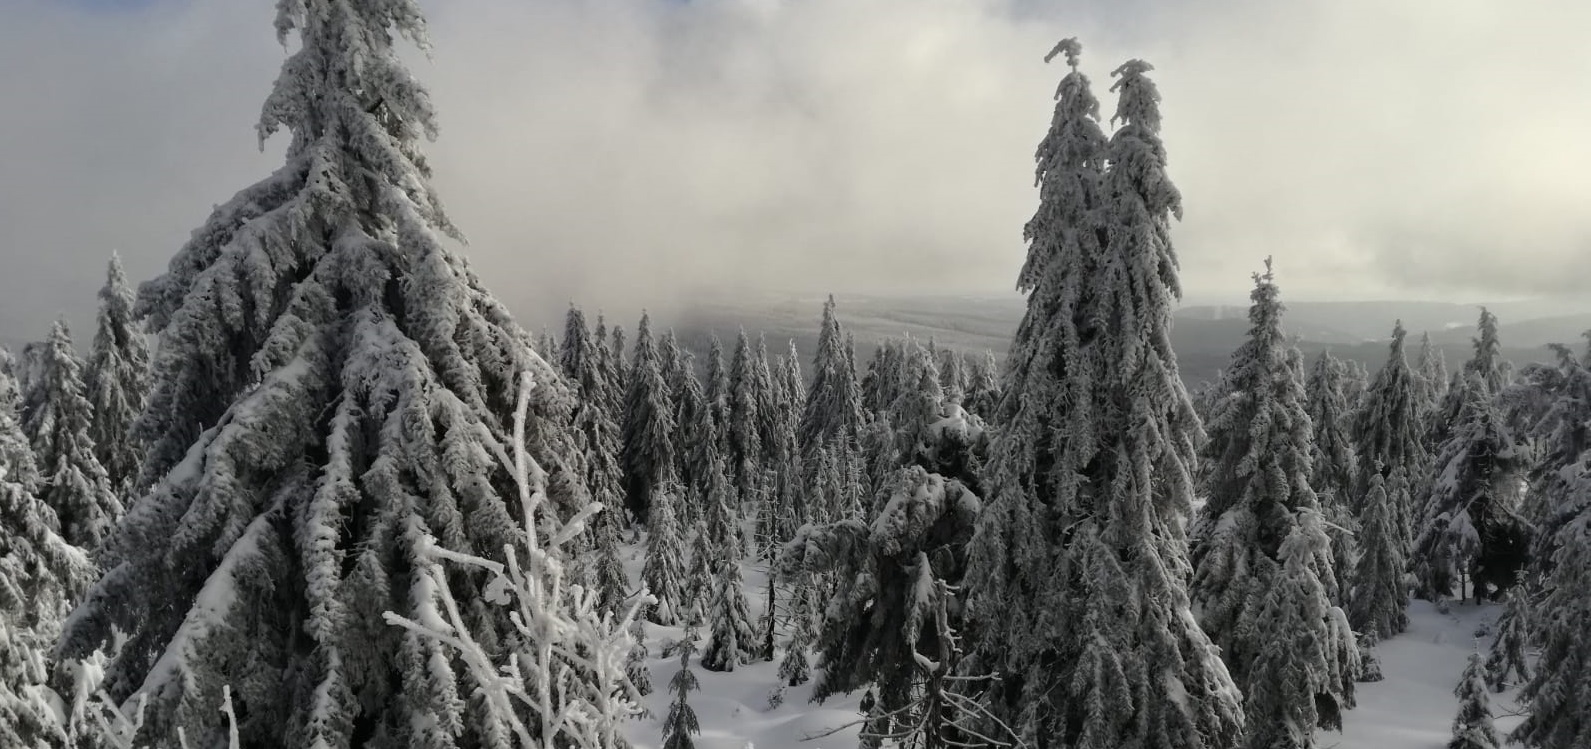 Der Einsiedler Skiverein wünscht ein frohes neues Jahr 2019